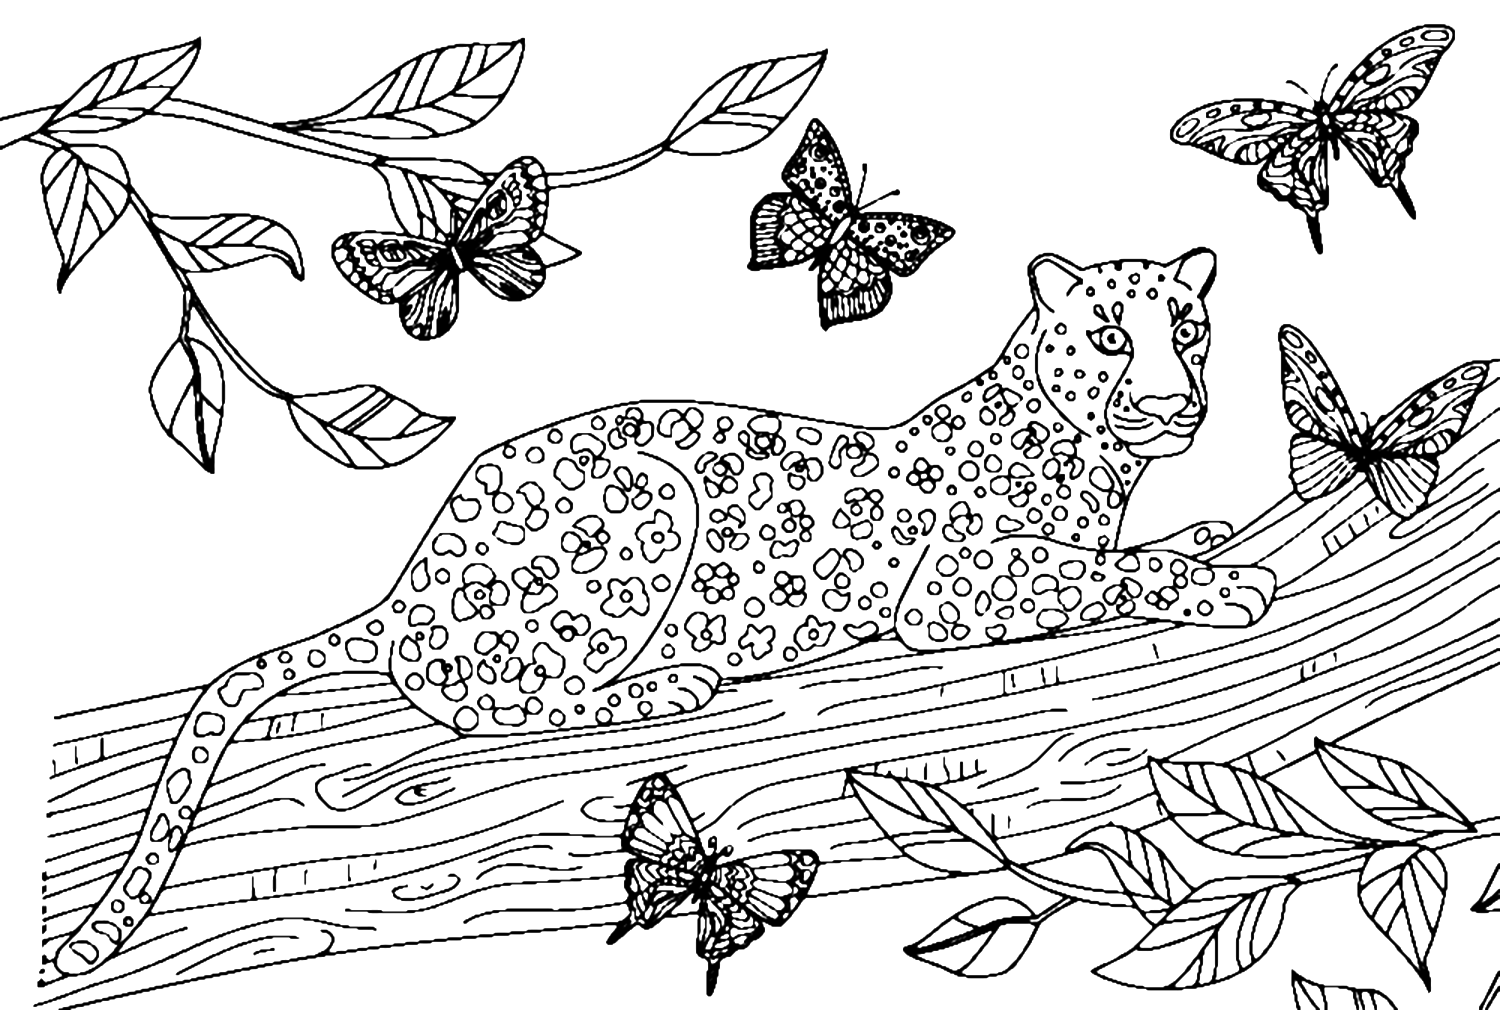 Desenho de Leopardo para colorir  Desenhos para colorir e imprimir gratis